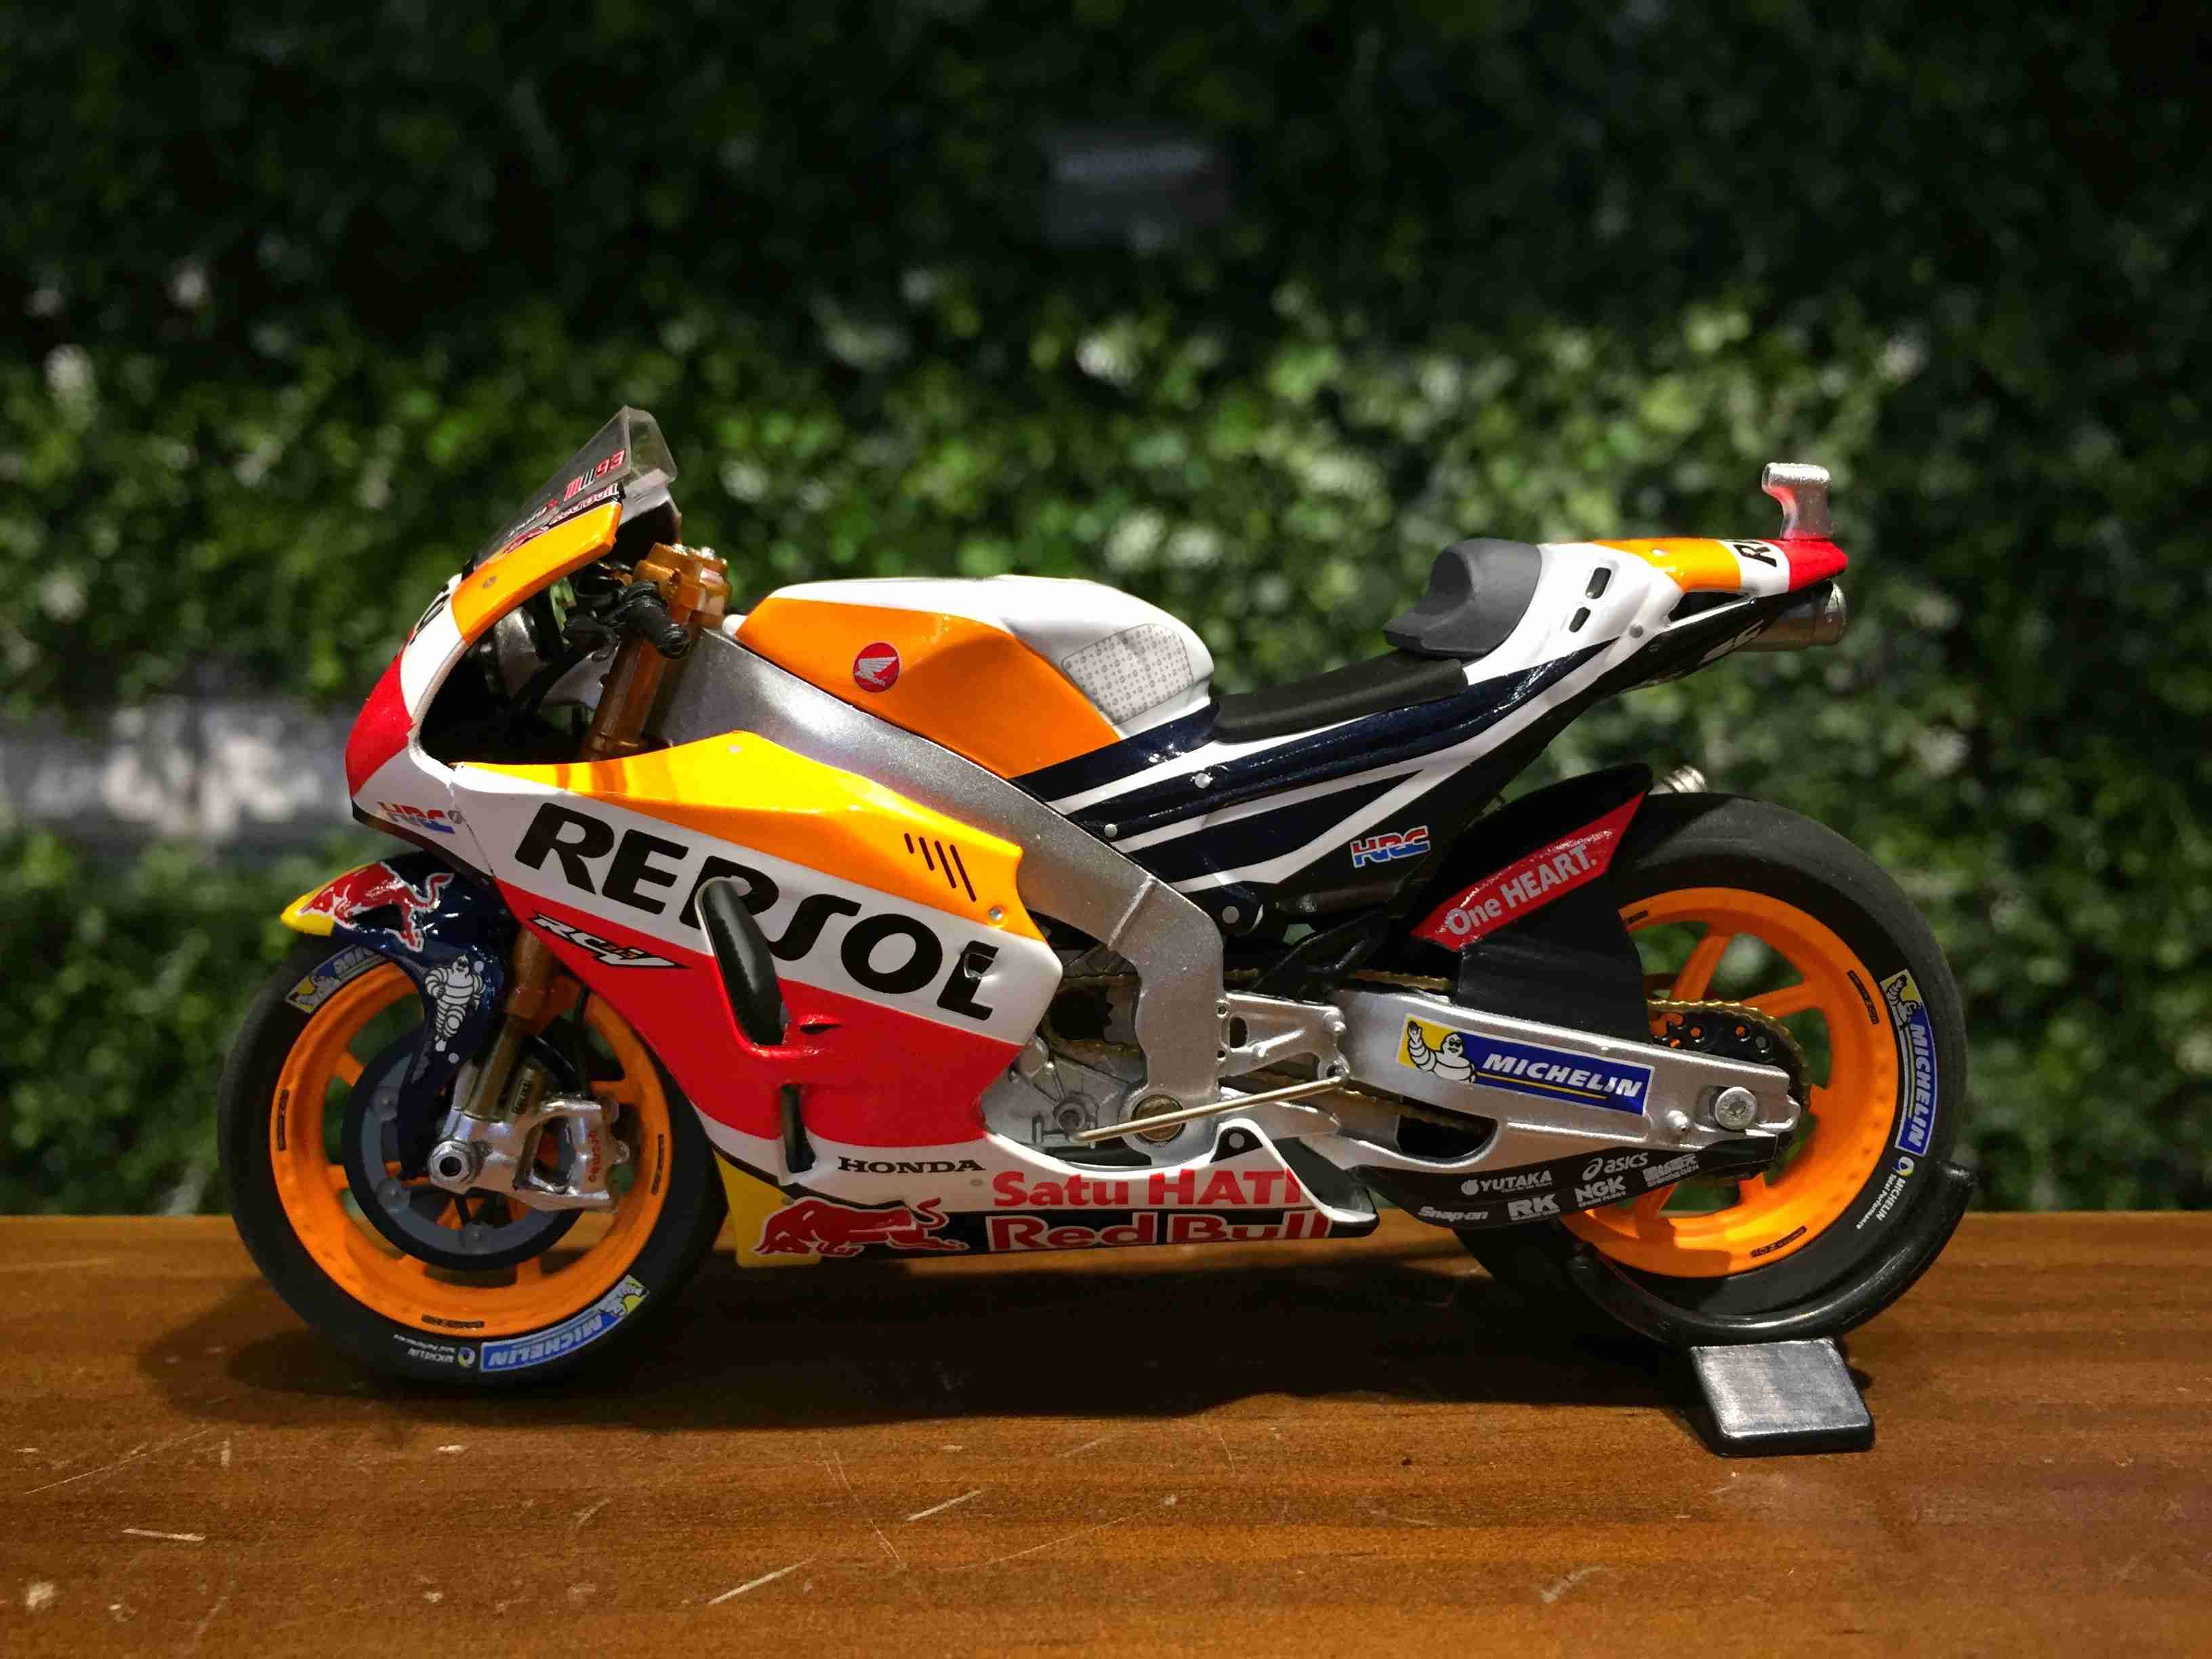 1/18 Minichamps Honda RC213V M.Marquez MotoGP 182171193【MGM】